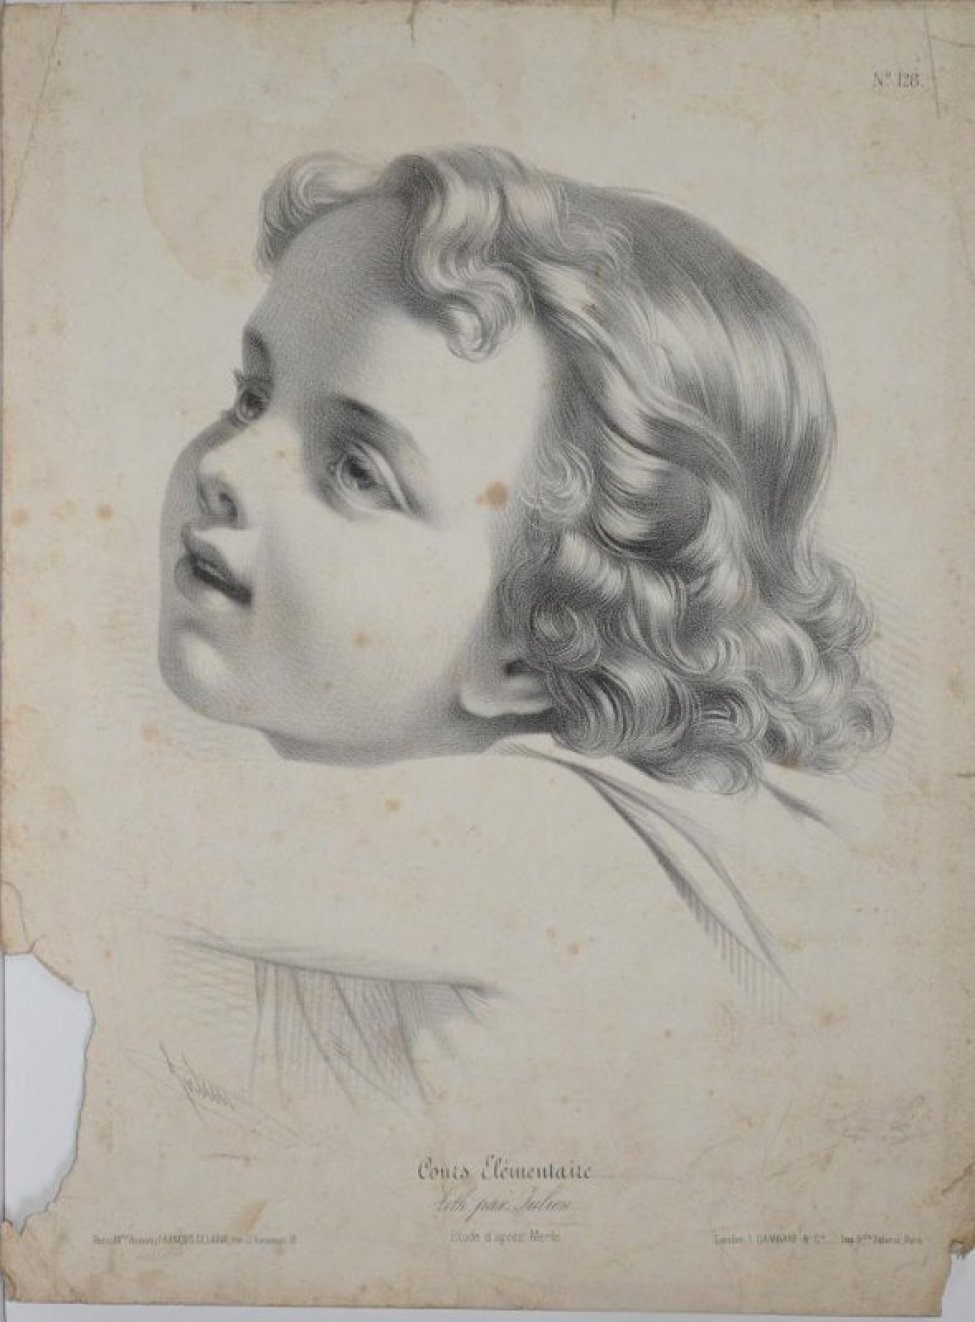 Погрудный портрет ребенка в профиль, в повороте влево. Голова и взгляд подняты вверх, рот приоткрыт в полуулыбке, волосы в локонах до плеч.